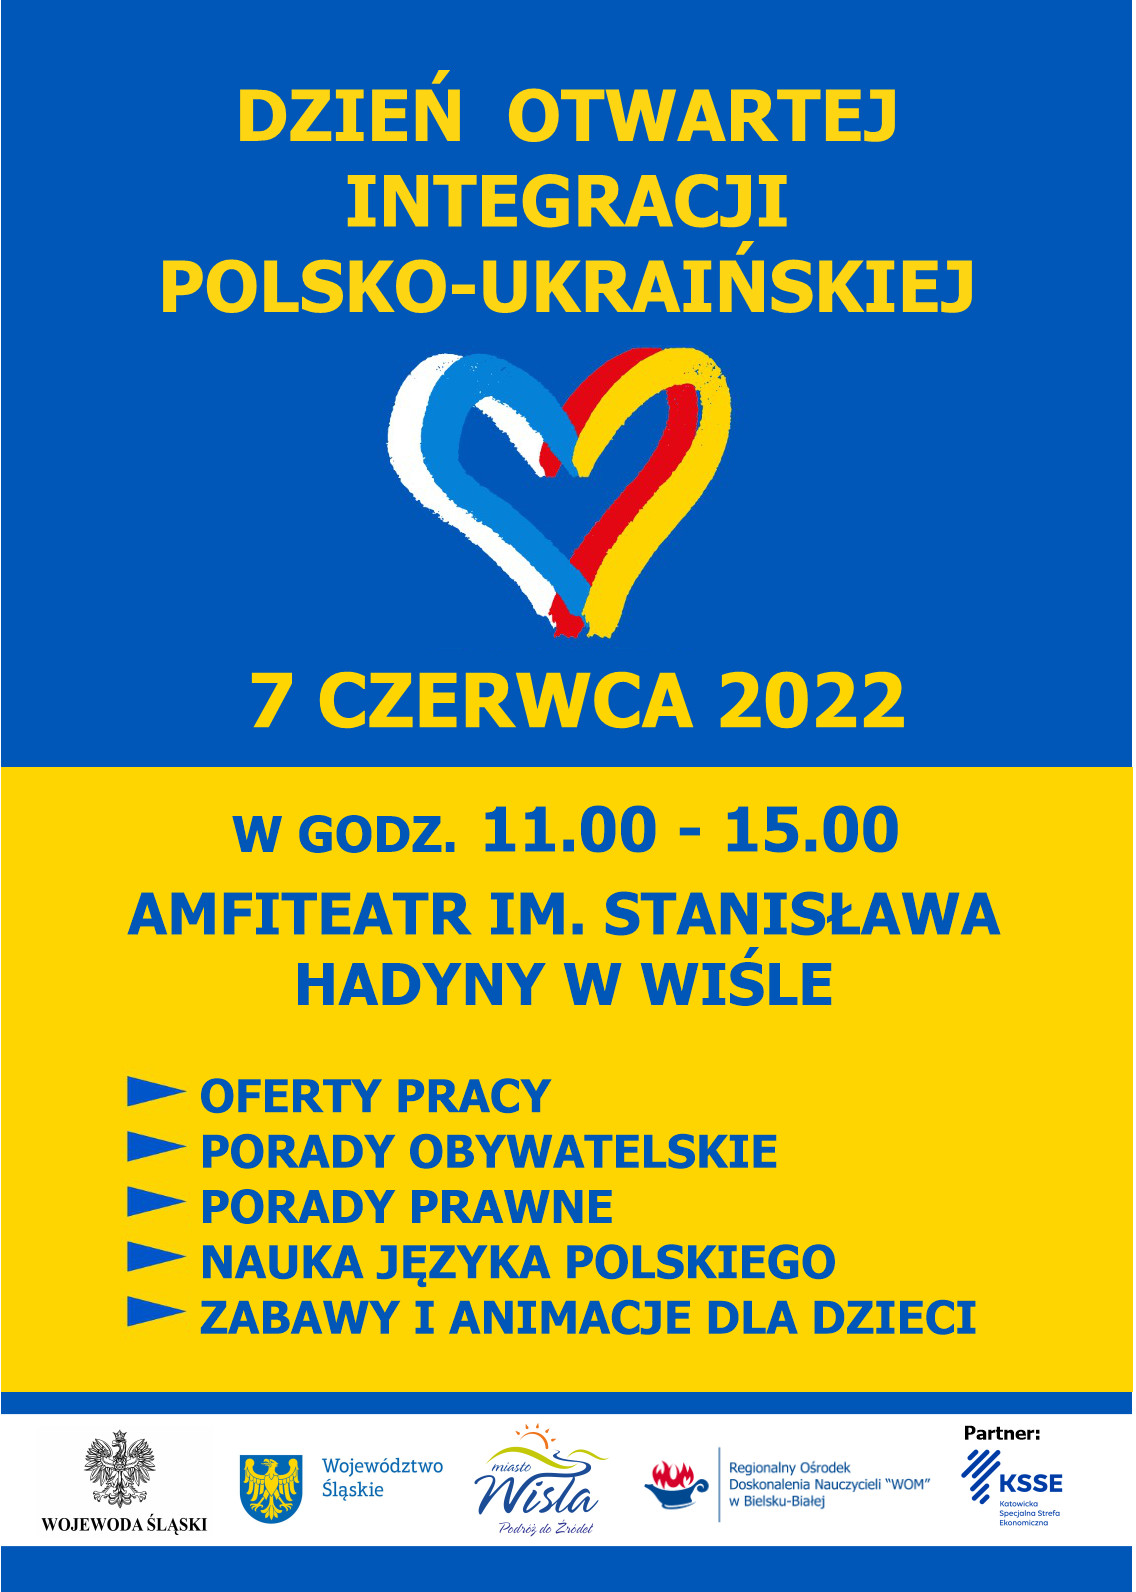 Dzień Otwartej Integracji Polsko-Ukraińskiej tym razem w Wiśle